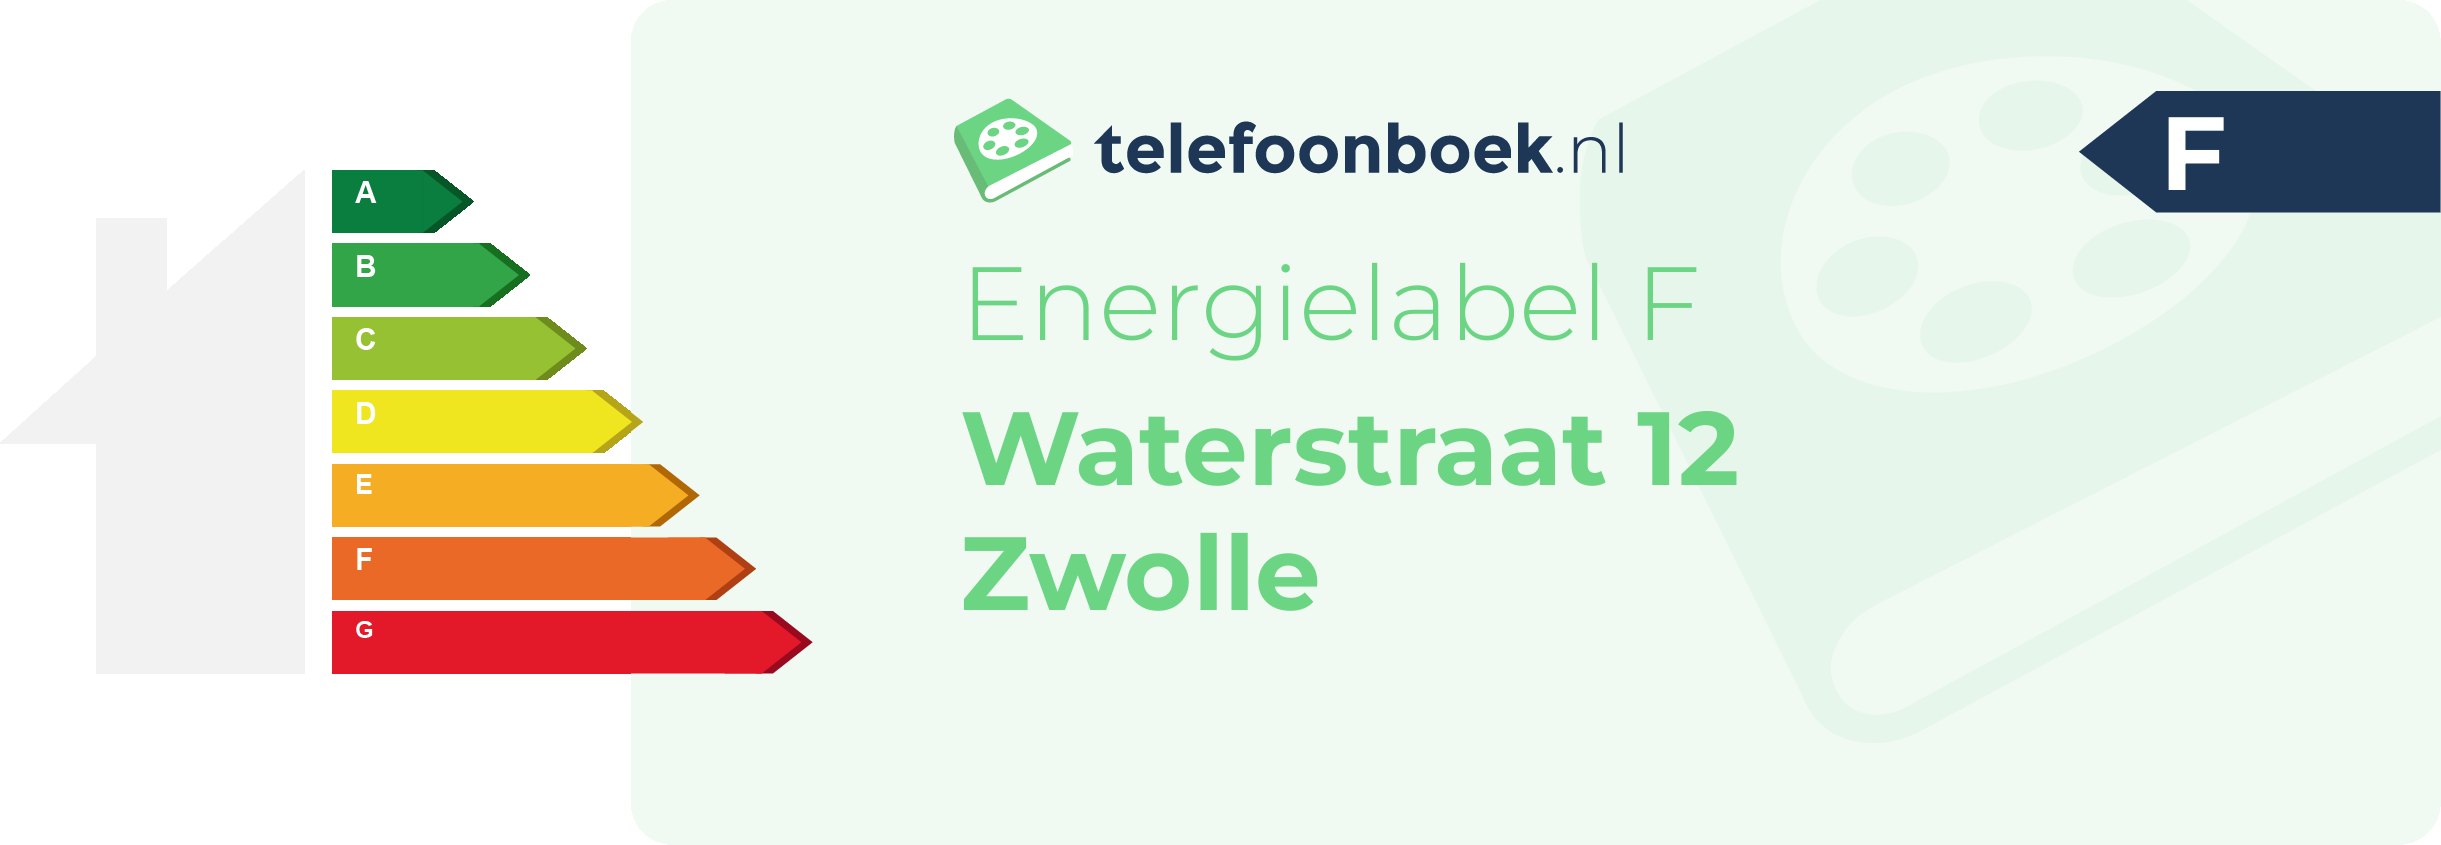 Energielabel Waterstraat 12 Zwolle